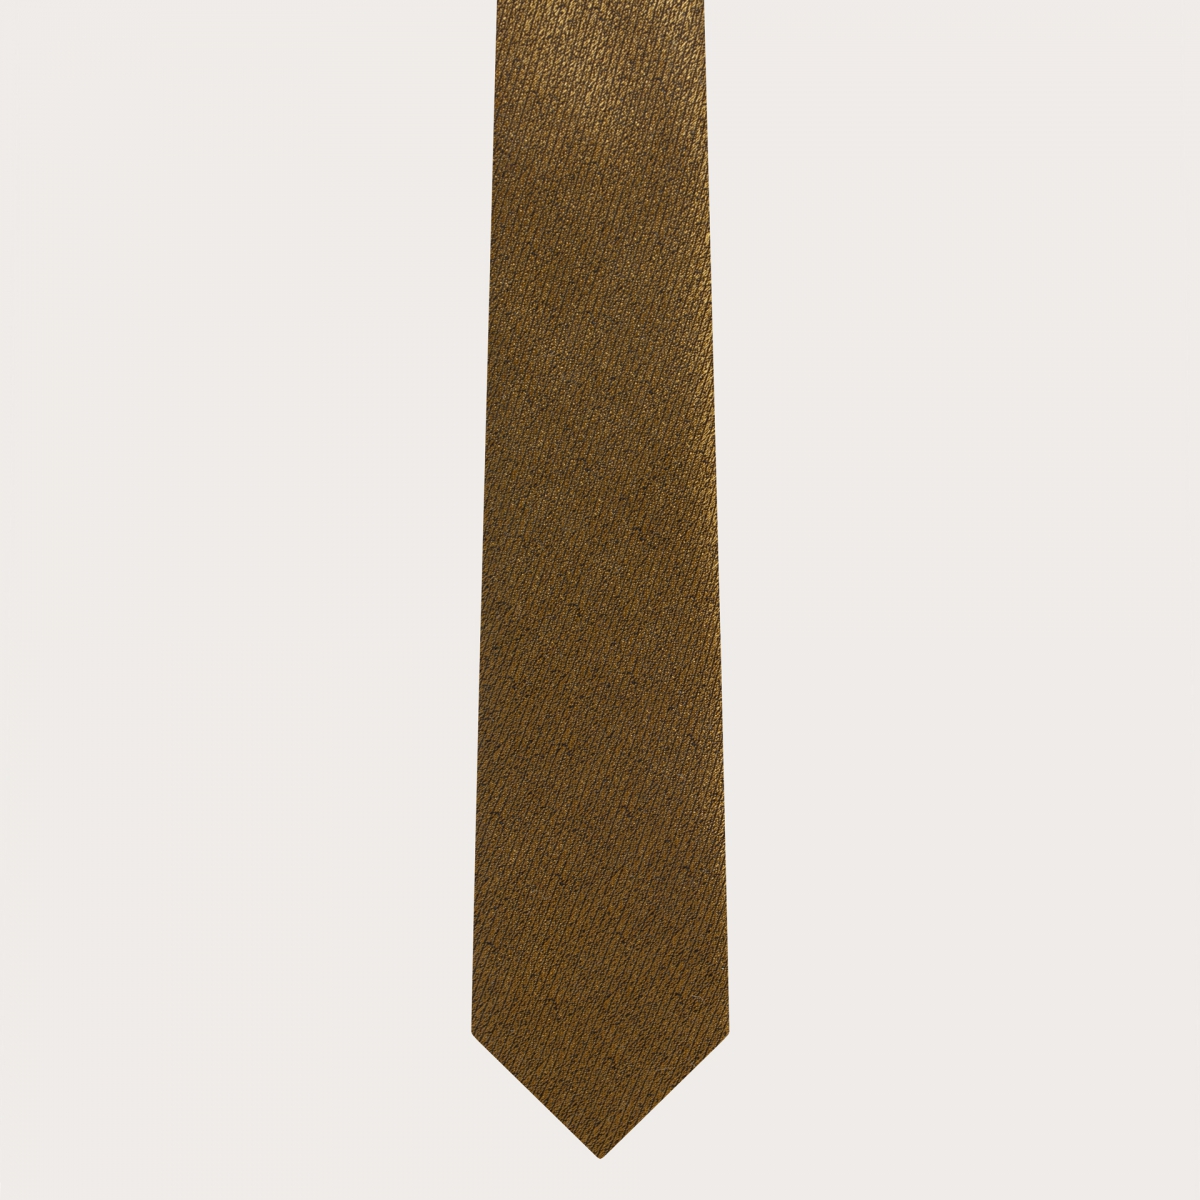 BRUCLE Elegante corbata fina de seda jacquard dorado irisado